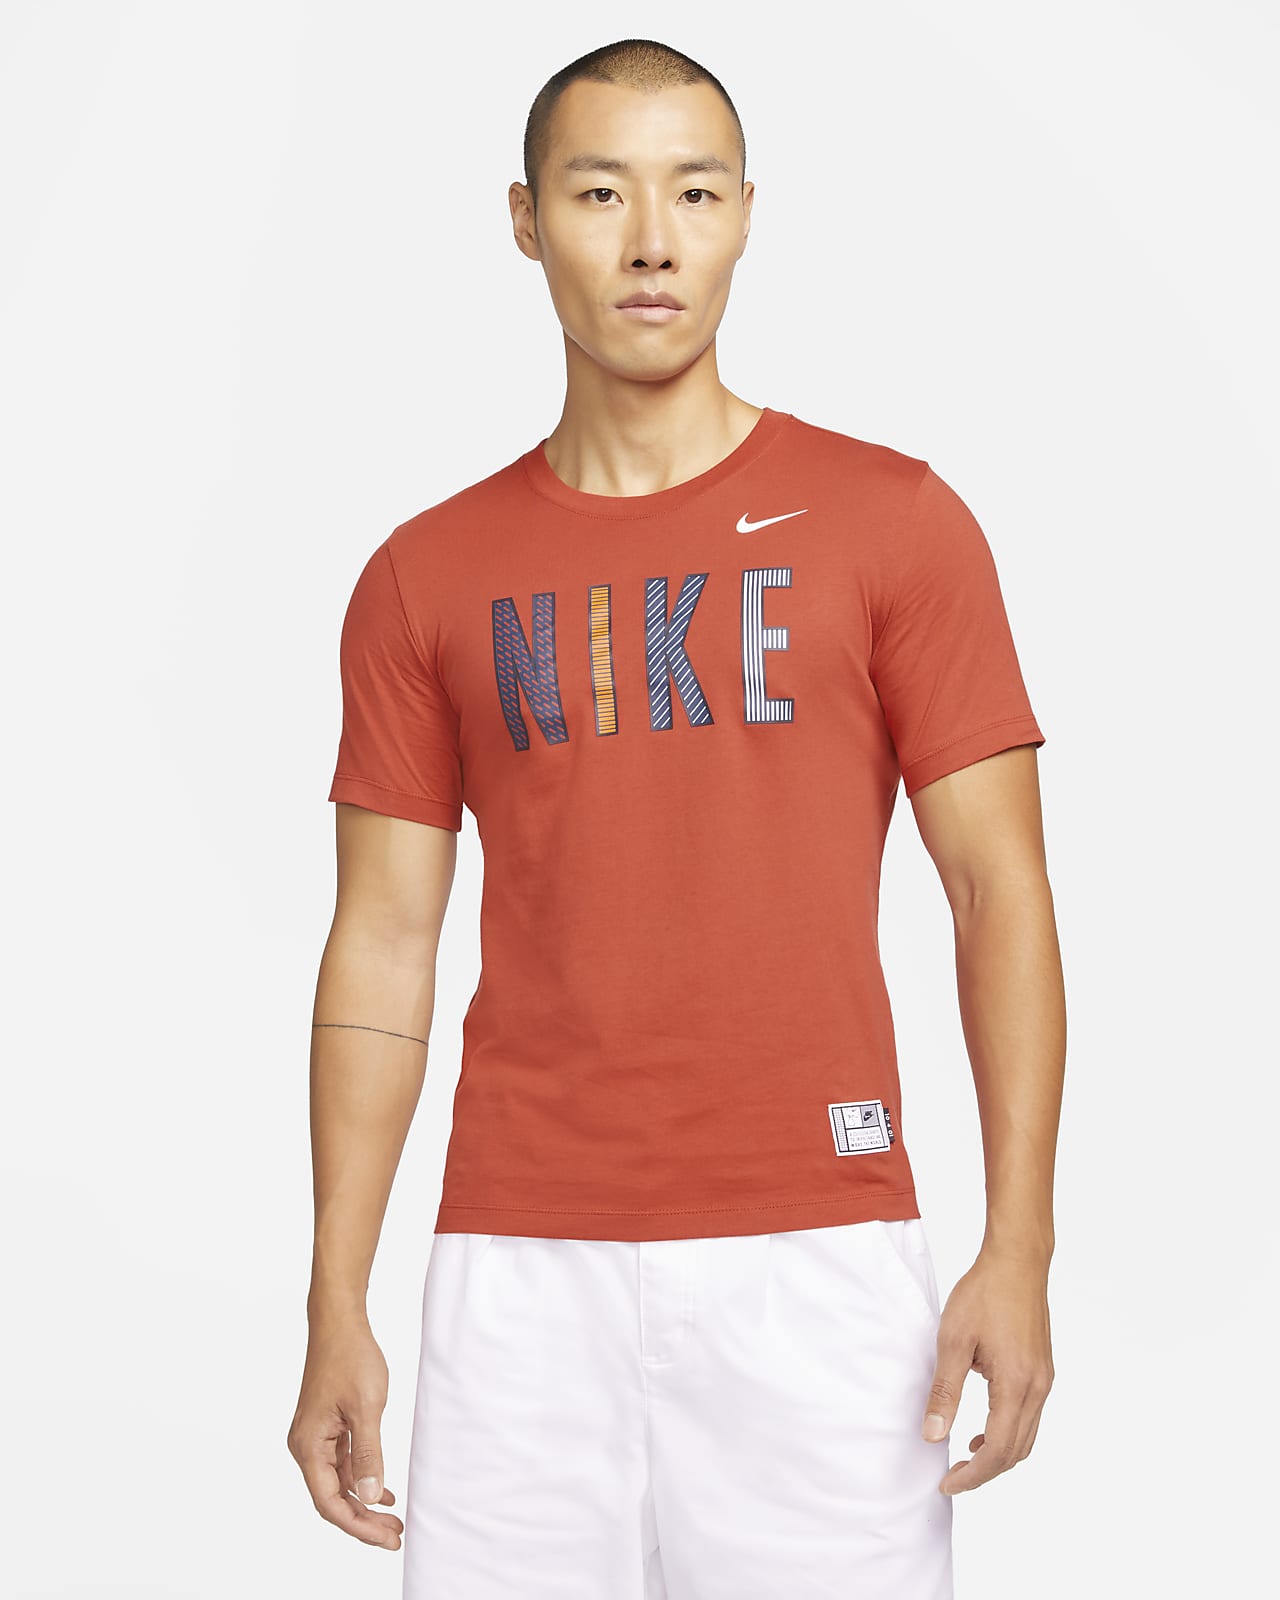 เสื้อยืดเทนนิสมีกราฟิก Serena Williams Design Crew